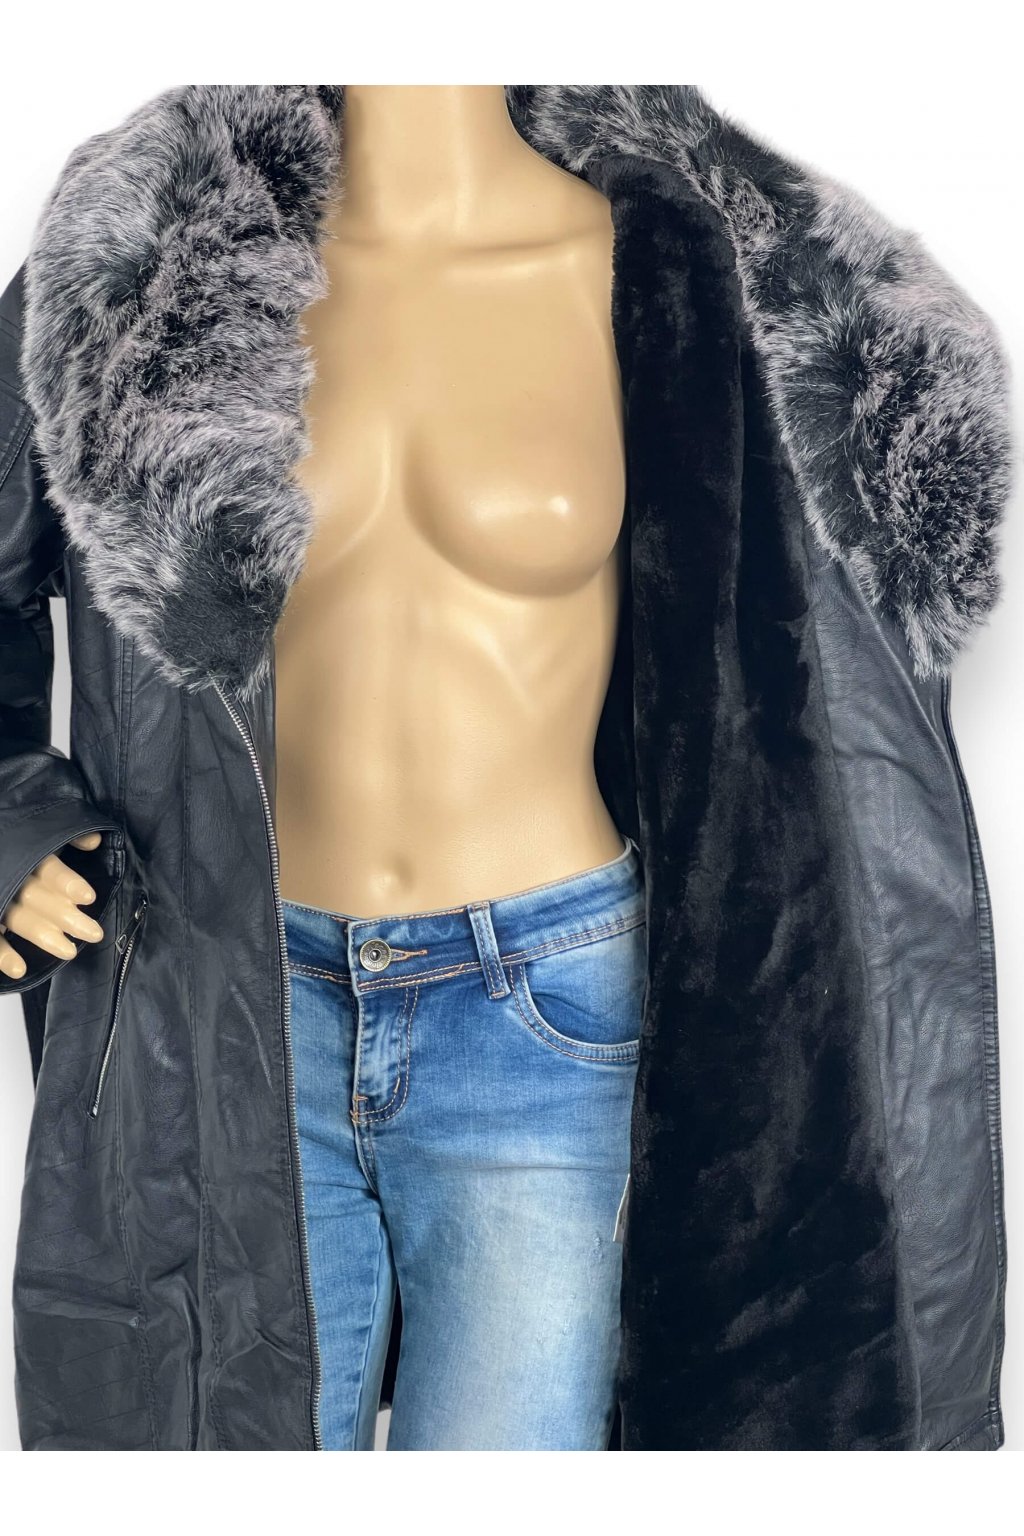 Dámská kožená zimní bunda černé barvy - Radost oblékat